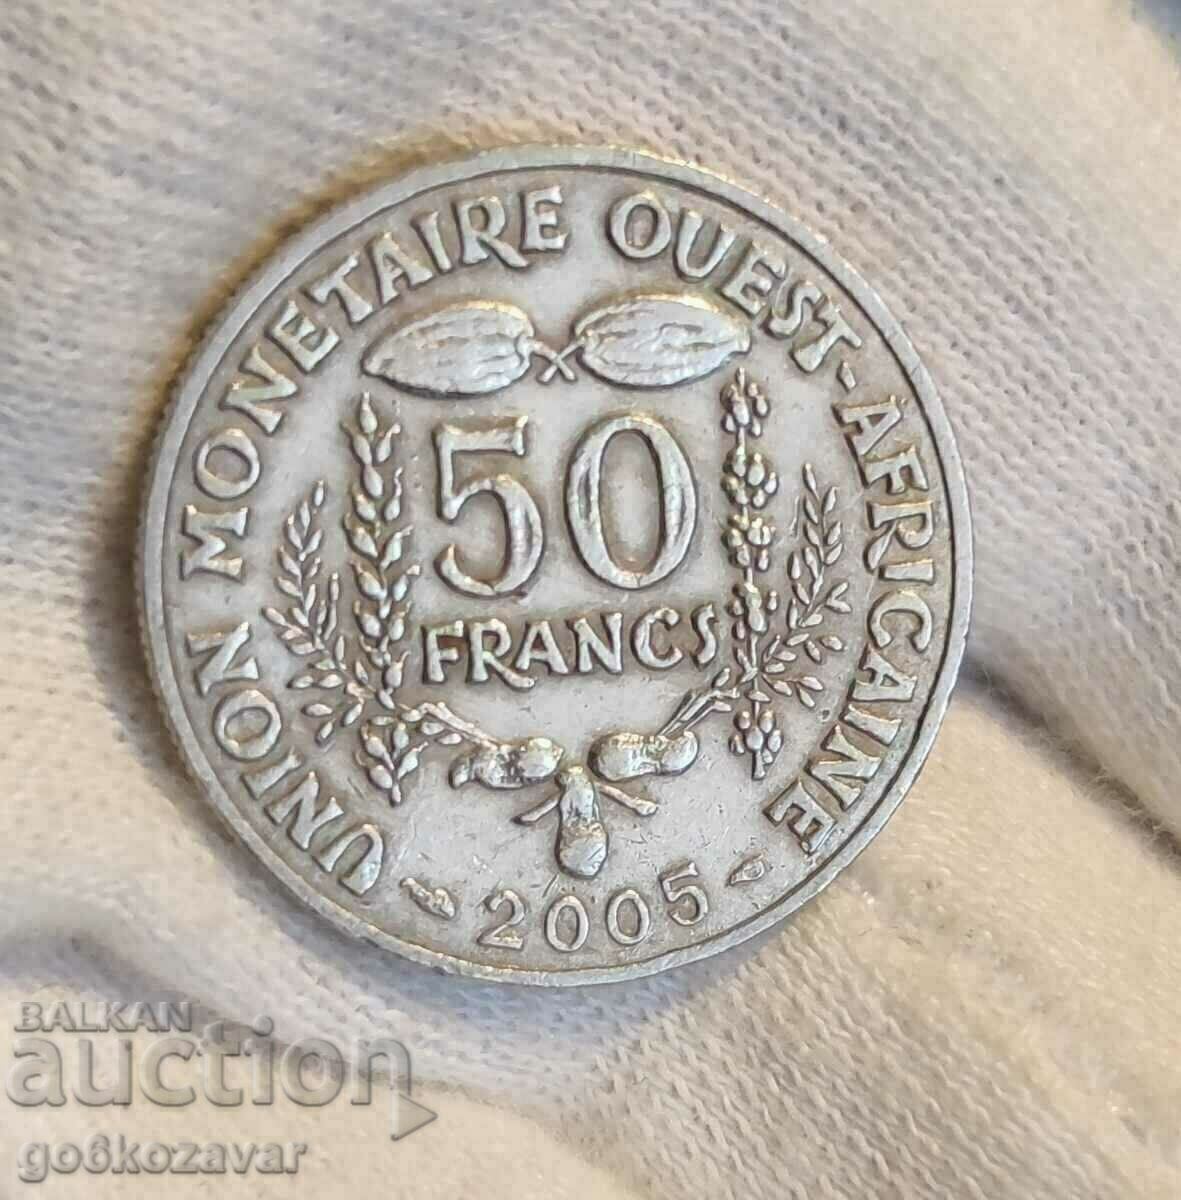 West Africa 50 Francs 2005